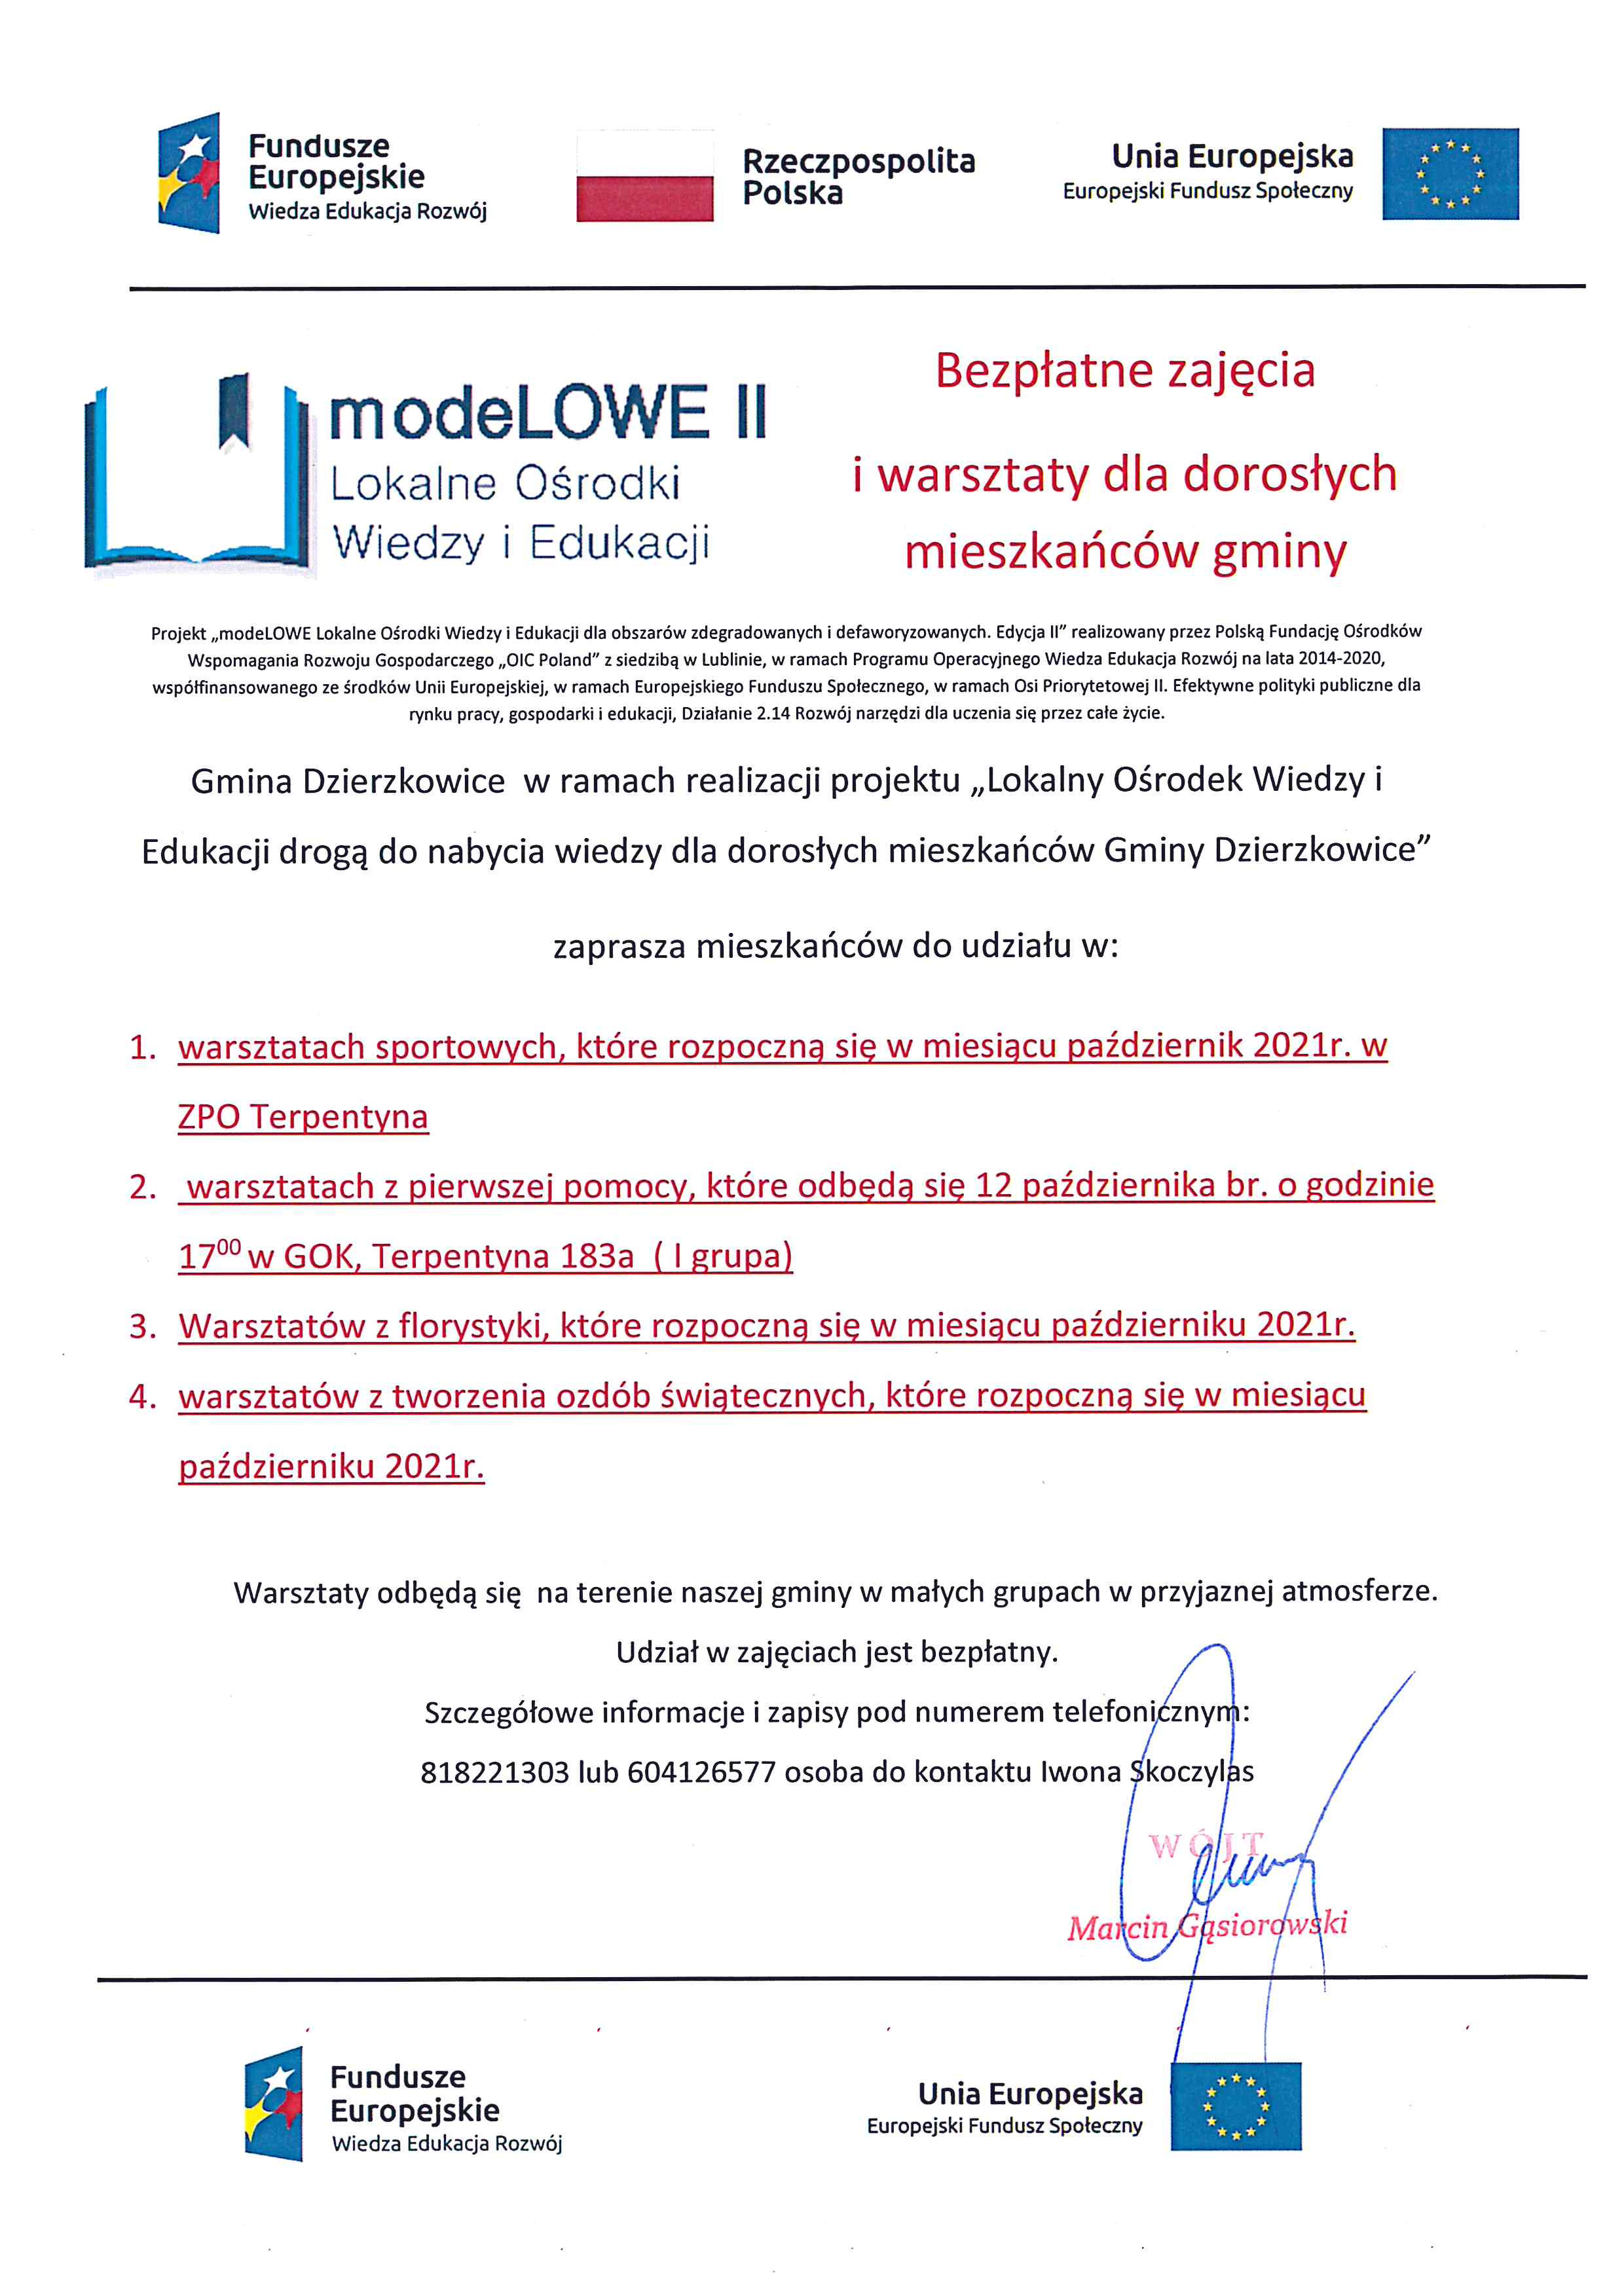 modeLOWE II zaprasza mieszkańców Gminy Dzierzkowice do udziału w warsztatach